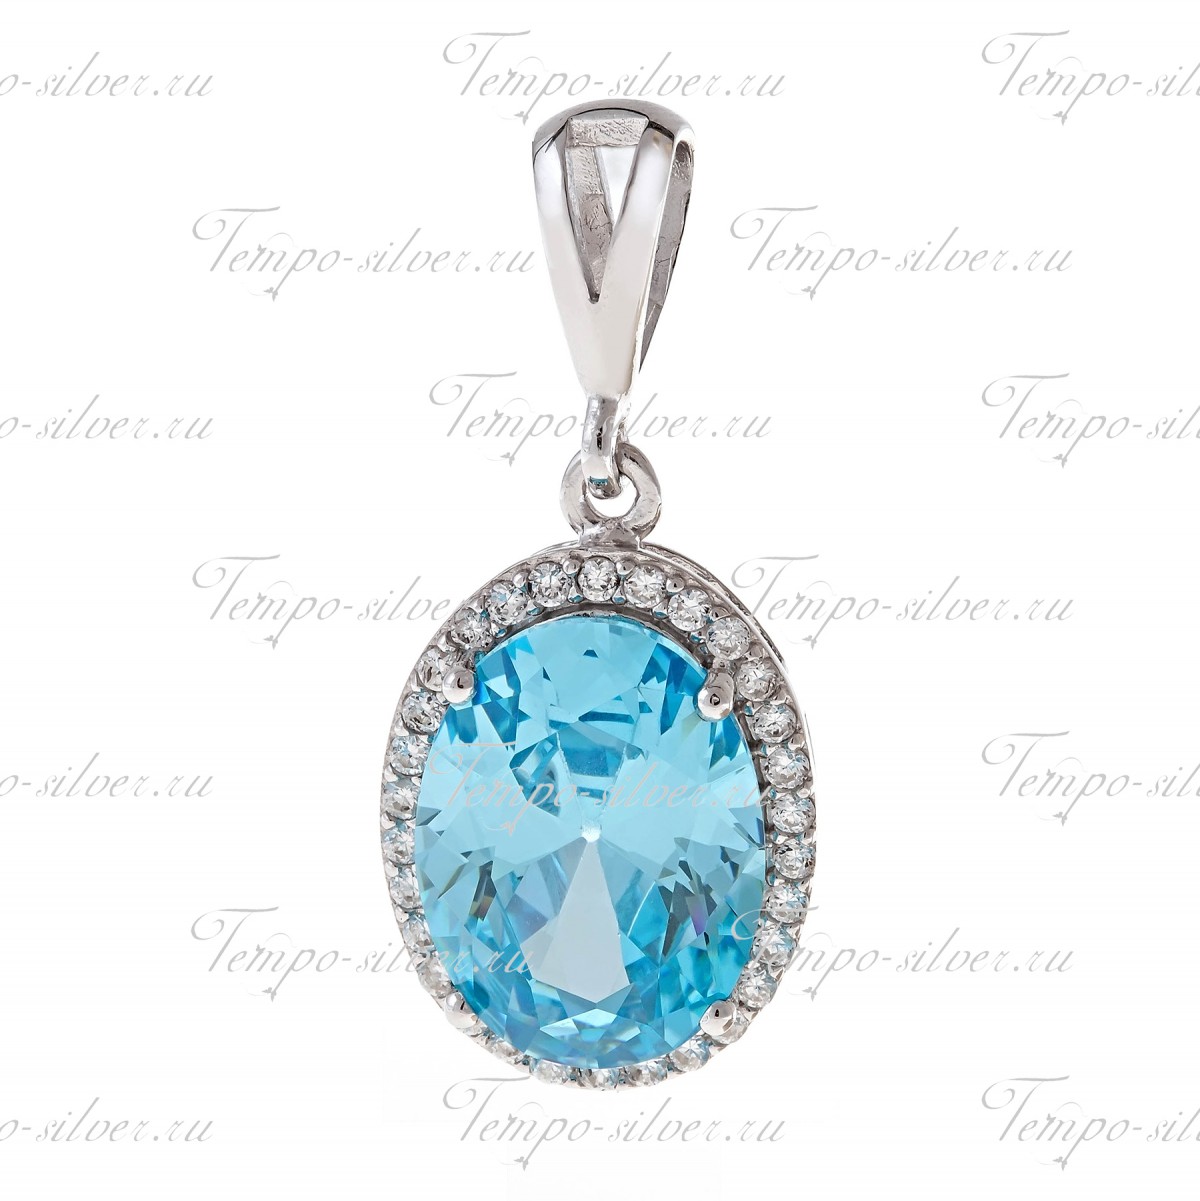 Подвеска из серебра с крупным голубым камнем овальной формы, окруженный россыпью белых камней цена